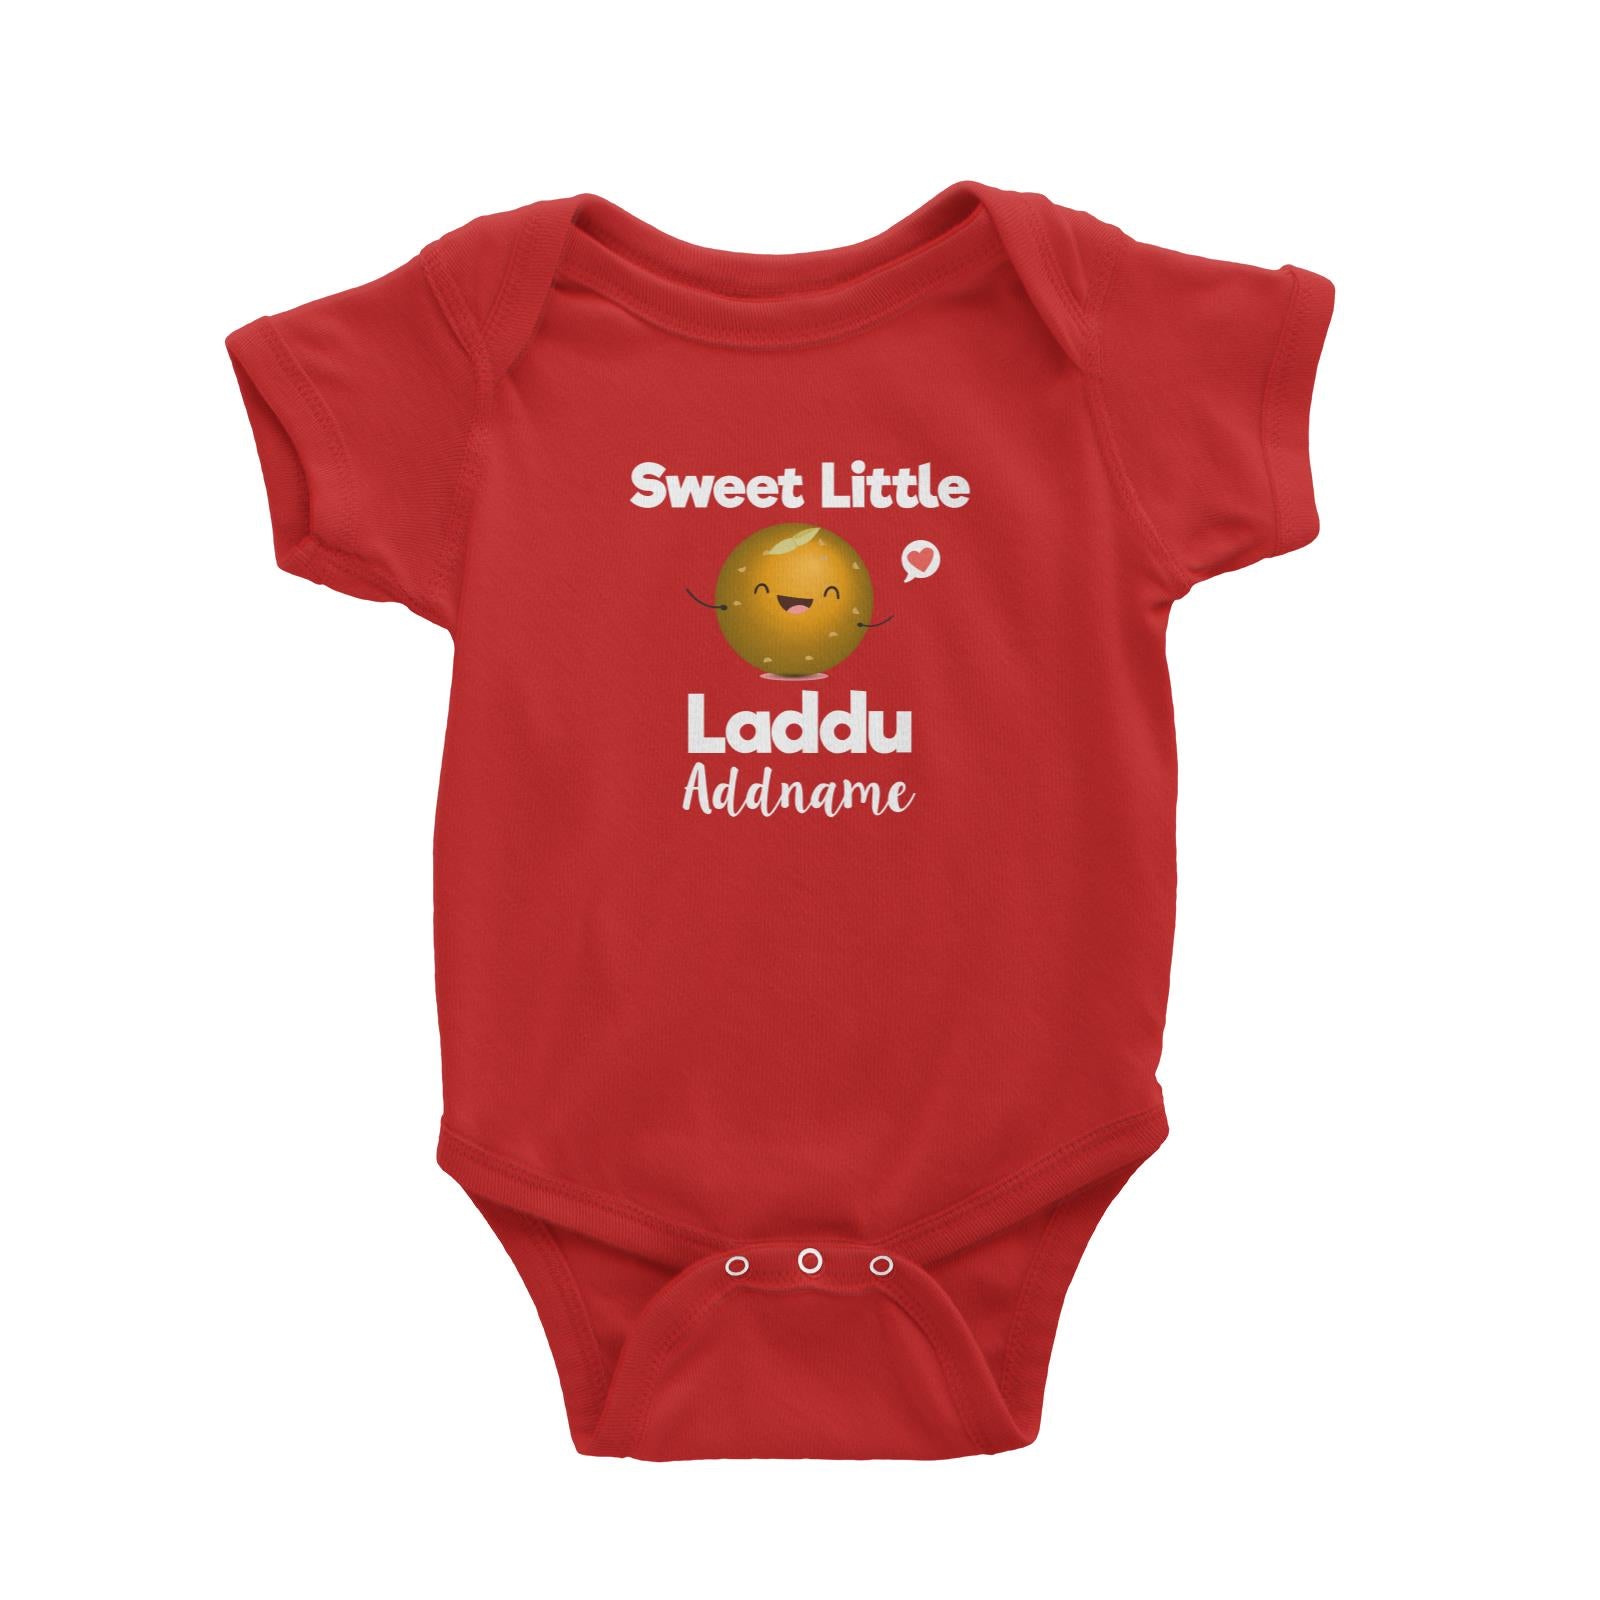 Sweet Little Laddu Addname Baby Romper